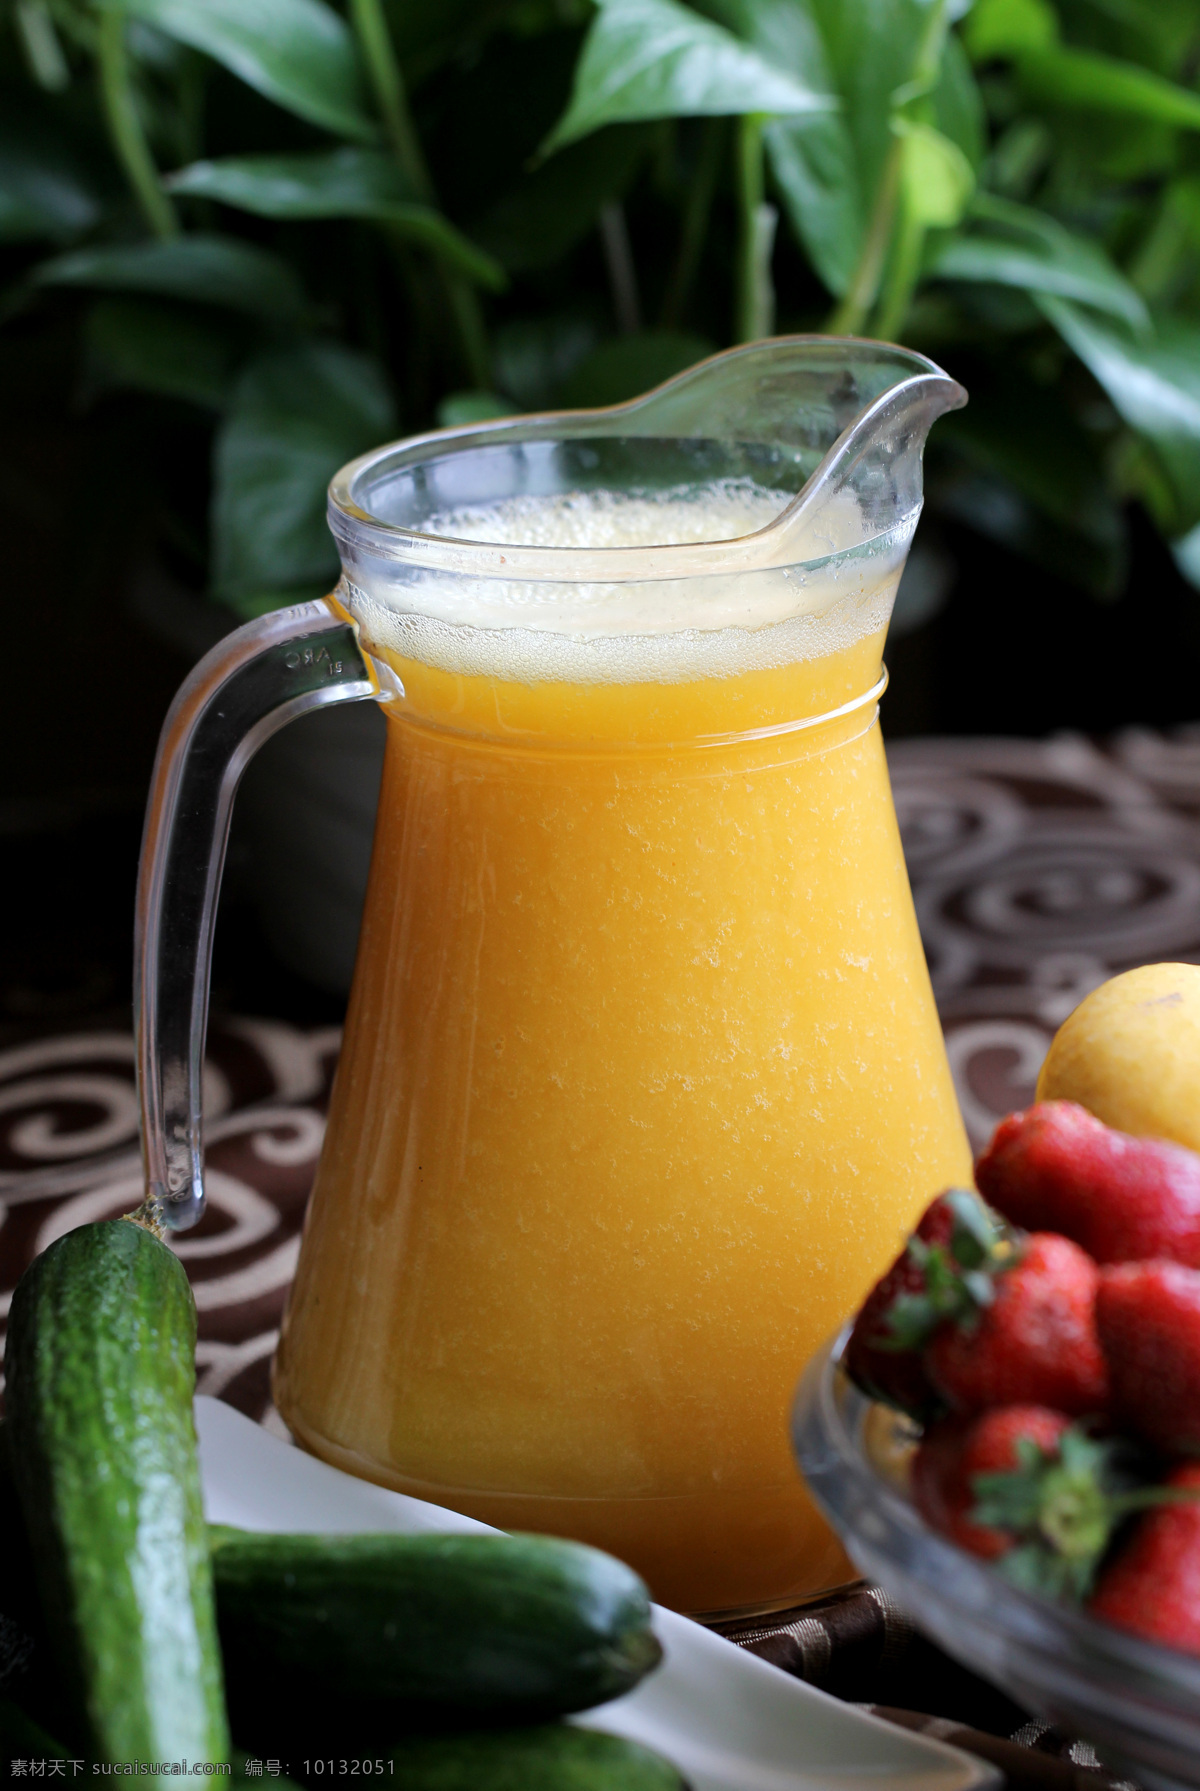 芒果汁 芒果 果汁 水果汁 饮料酒水 餐饮美食